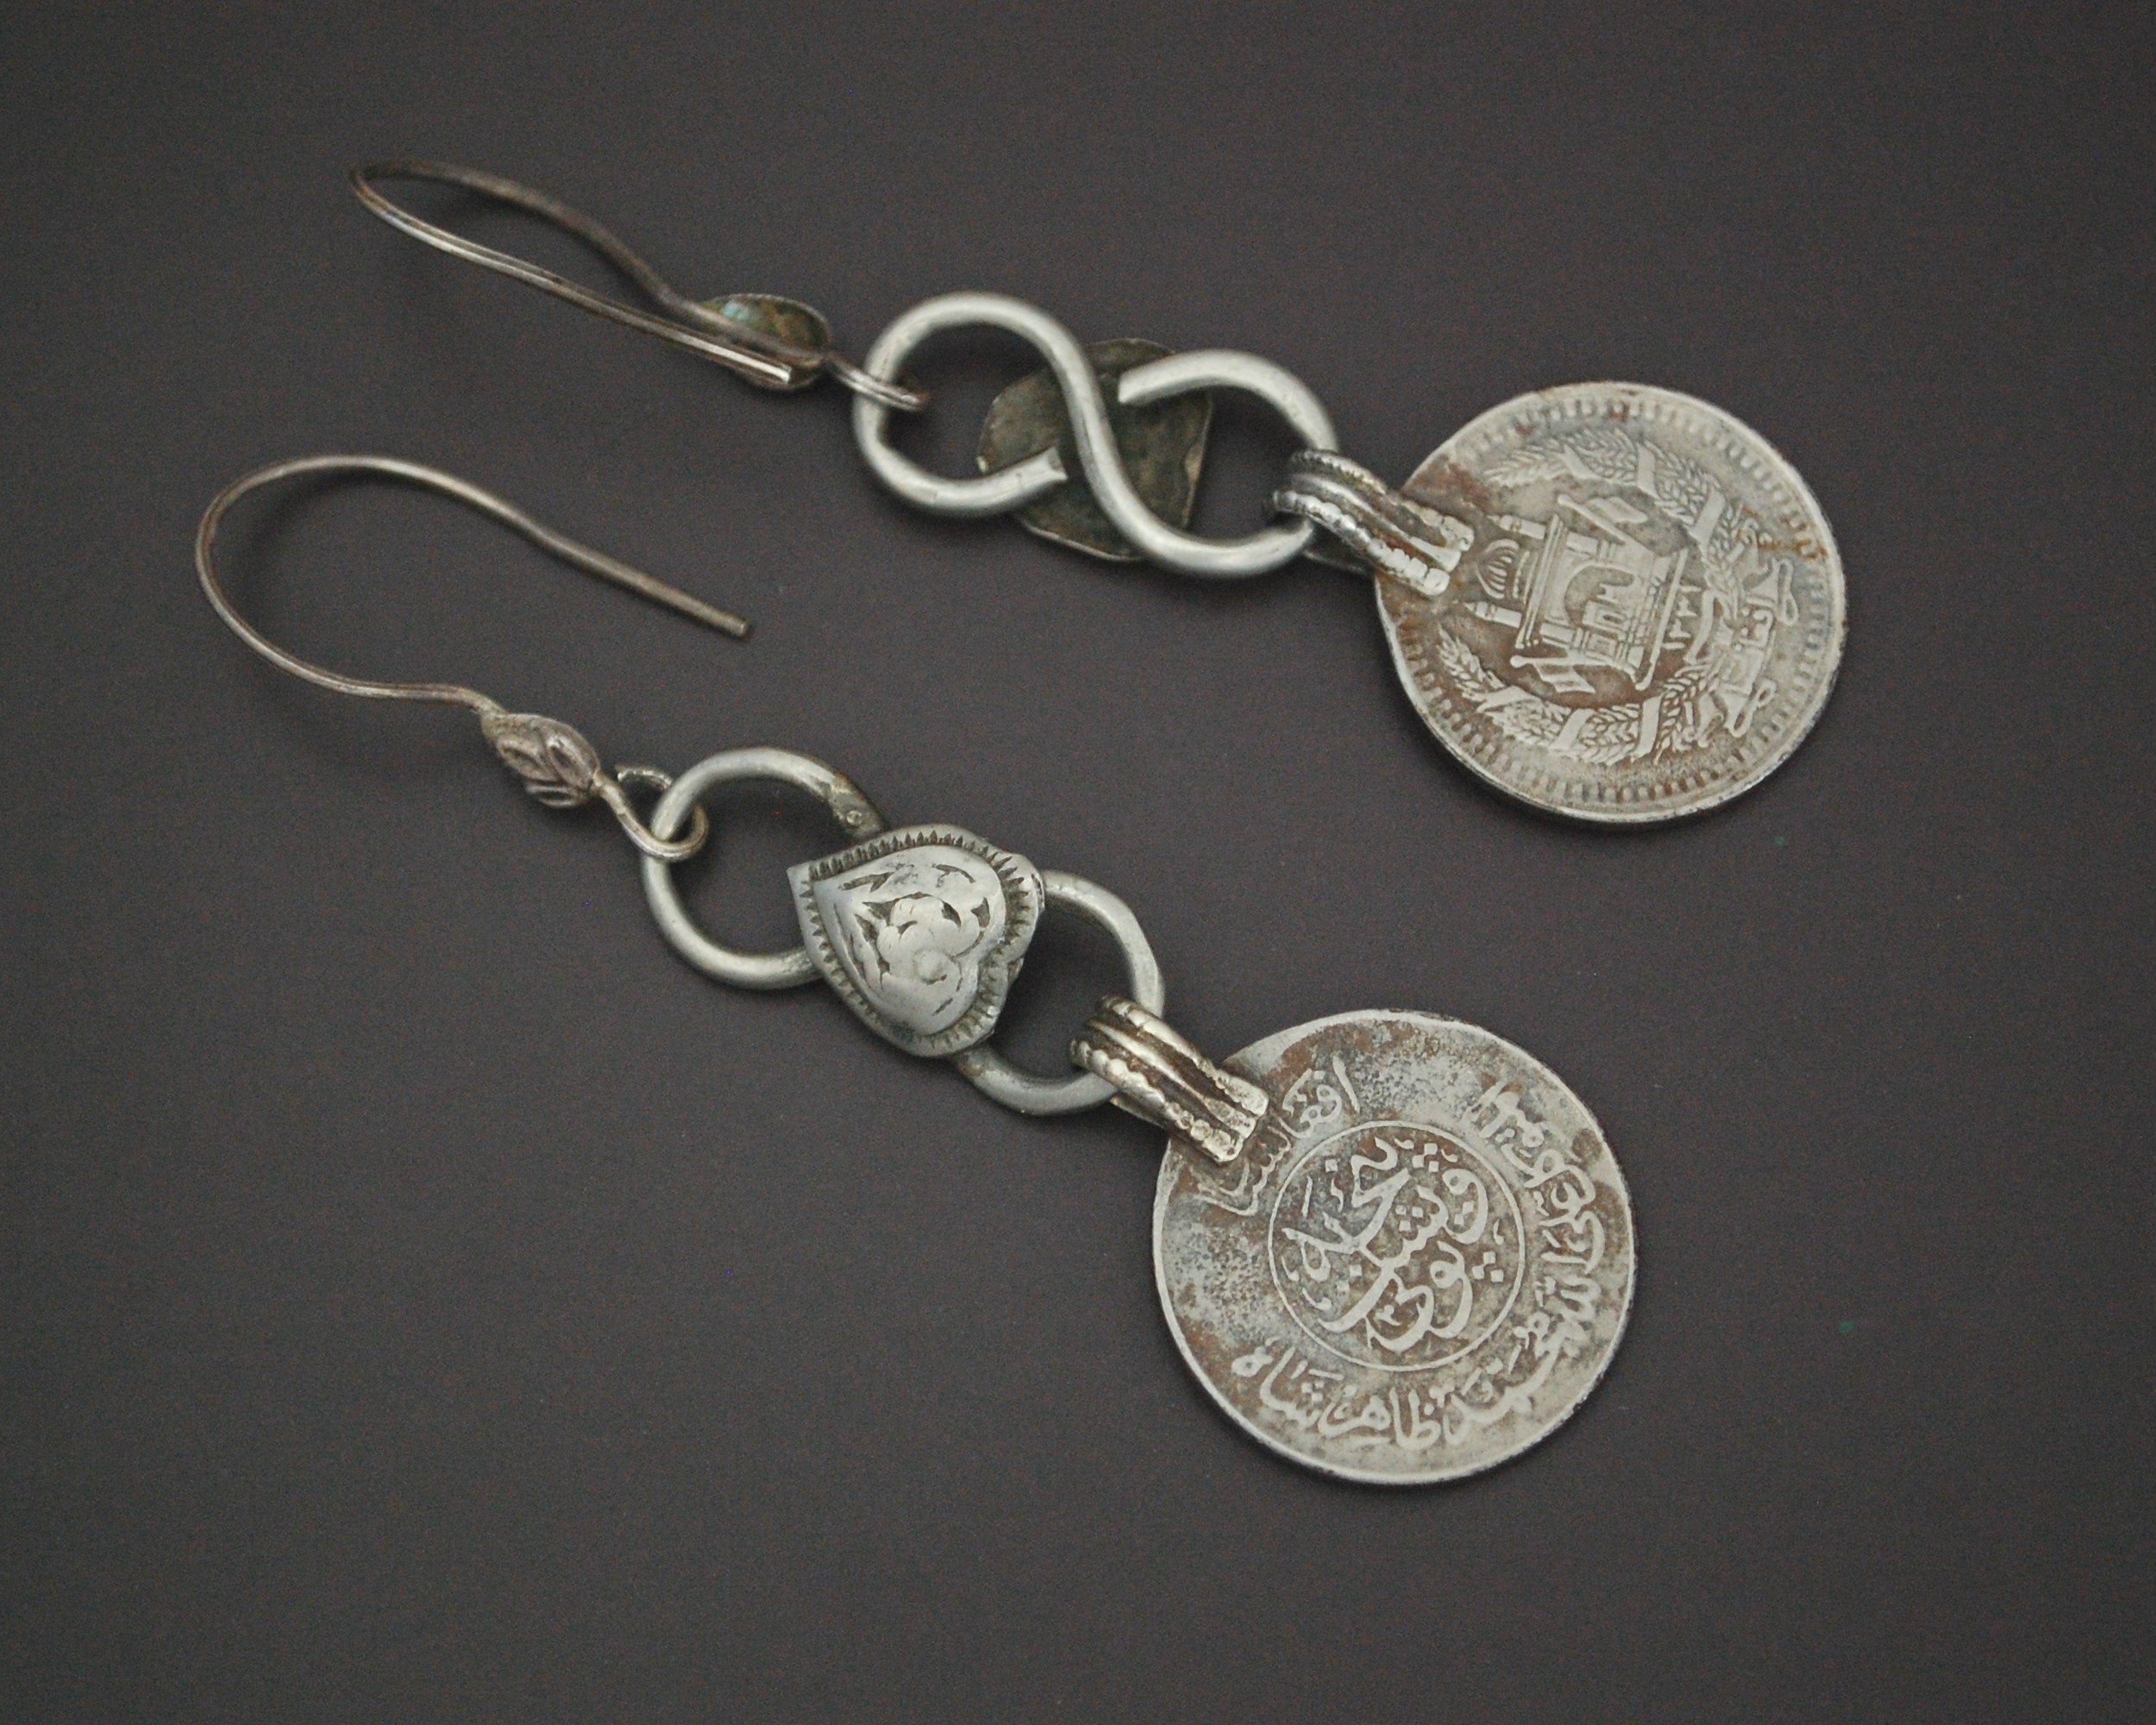 Afghani Coin Dangle Earrings